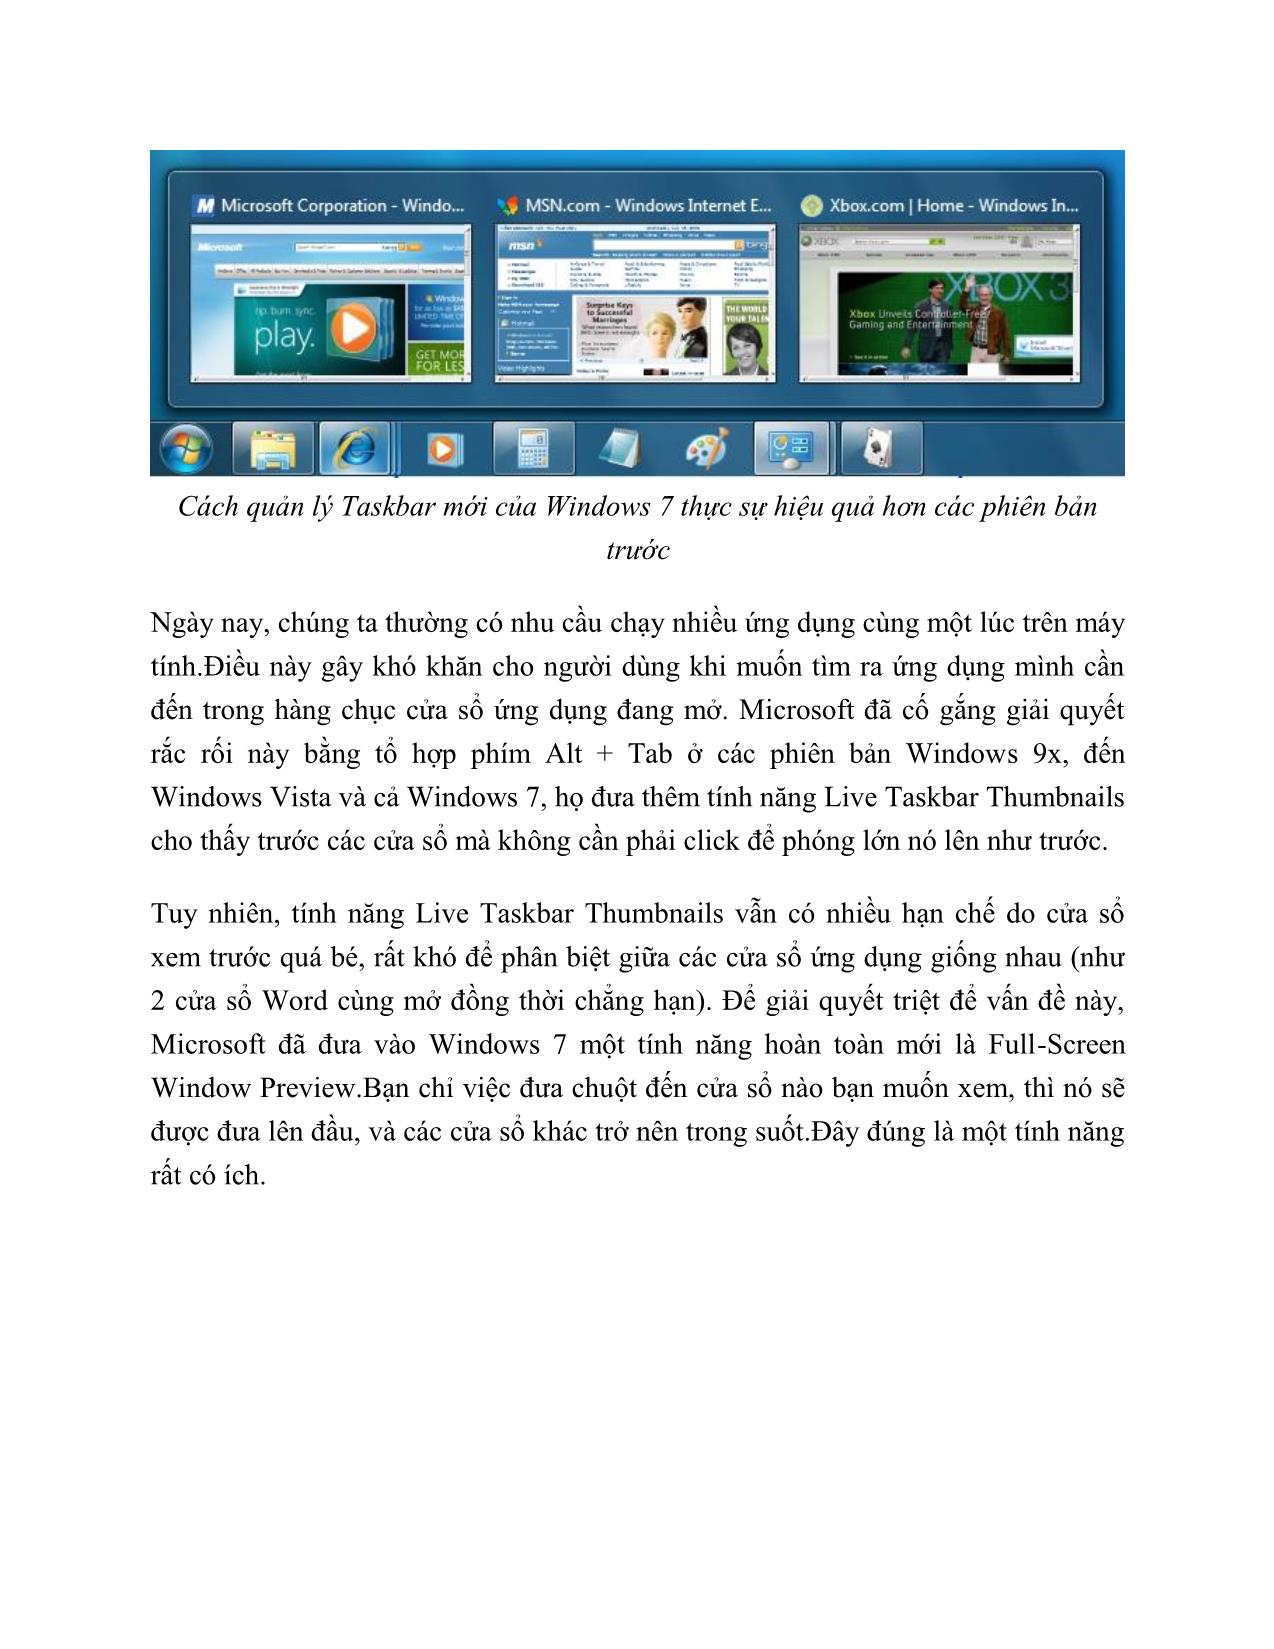 Hướng dẫn sử dụng cơ bản Windows 7 cho người mới bắt đầu trang 5